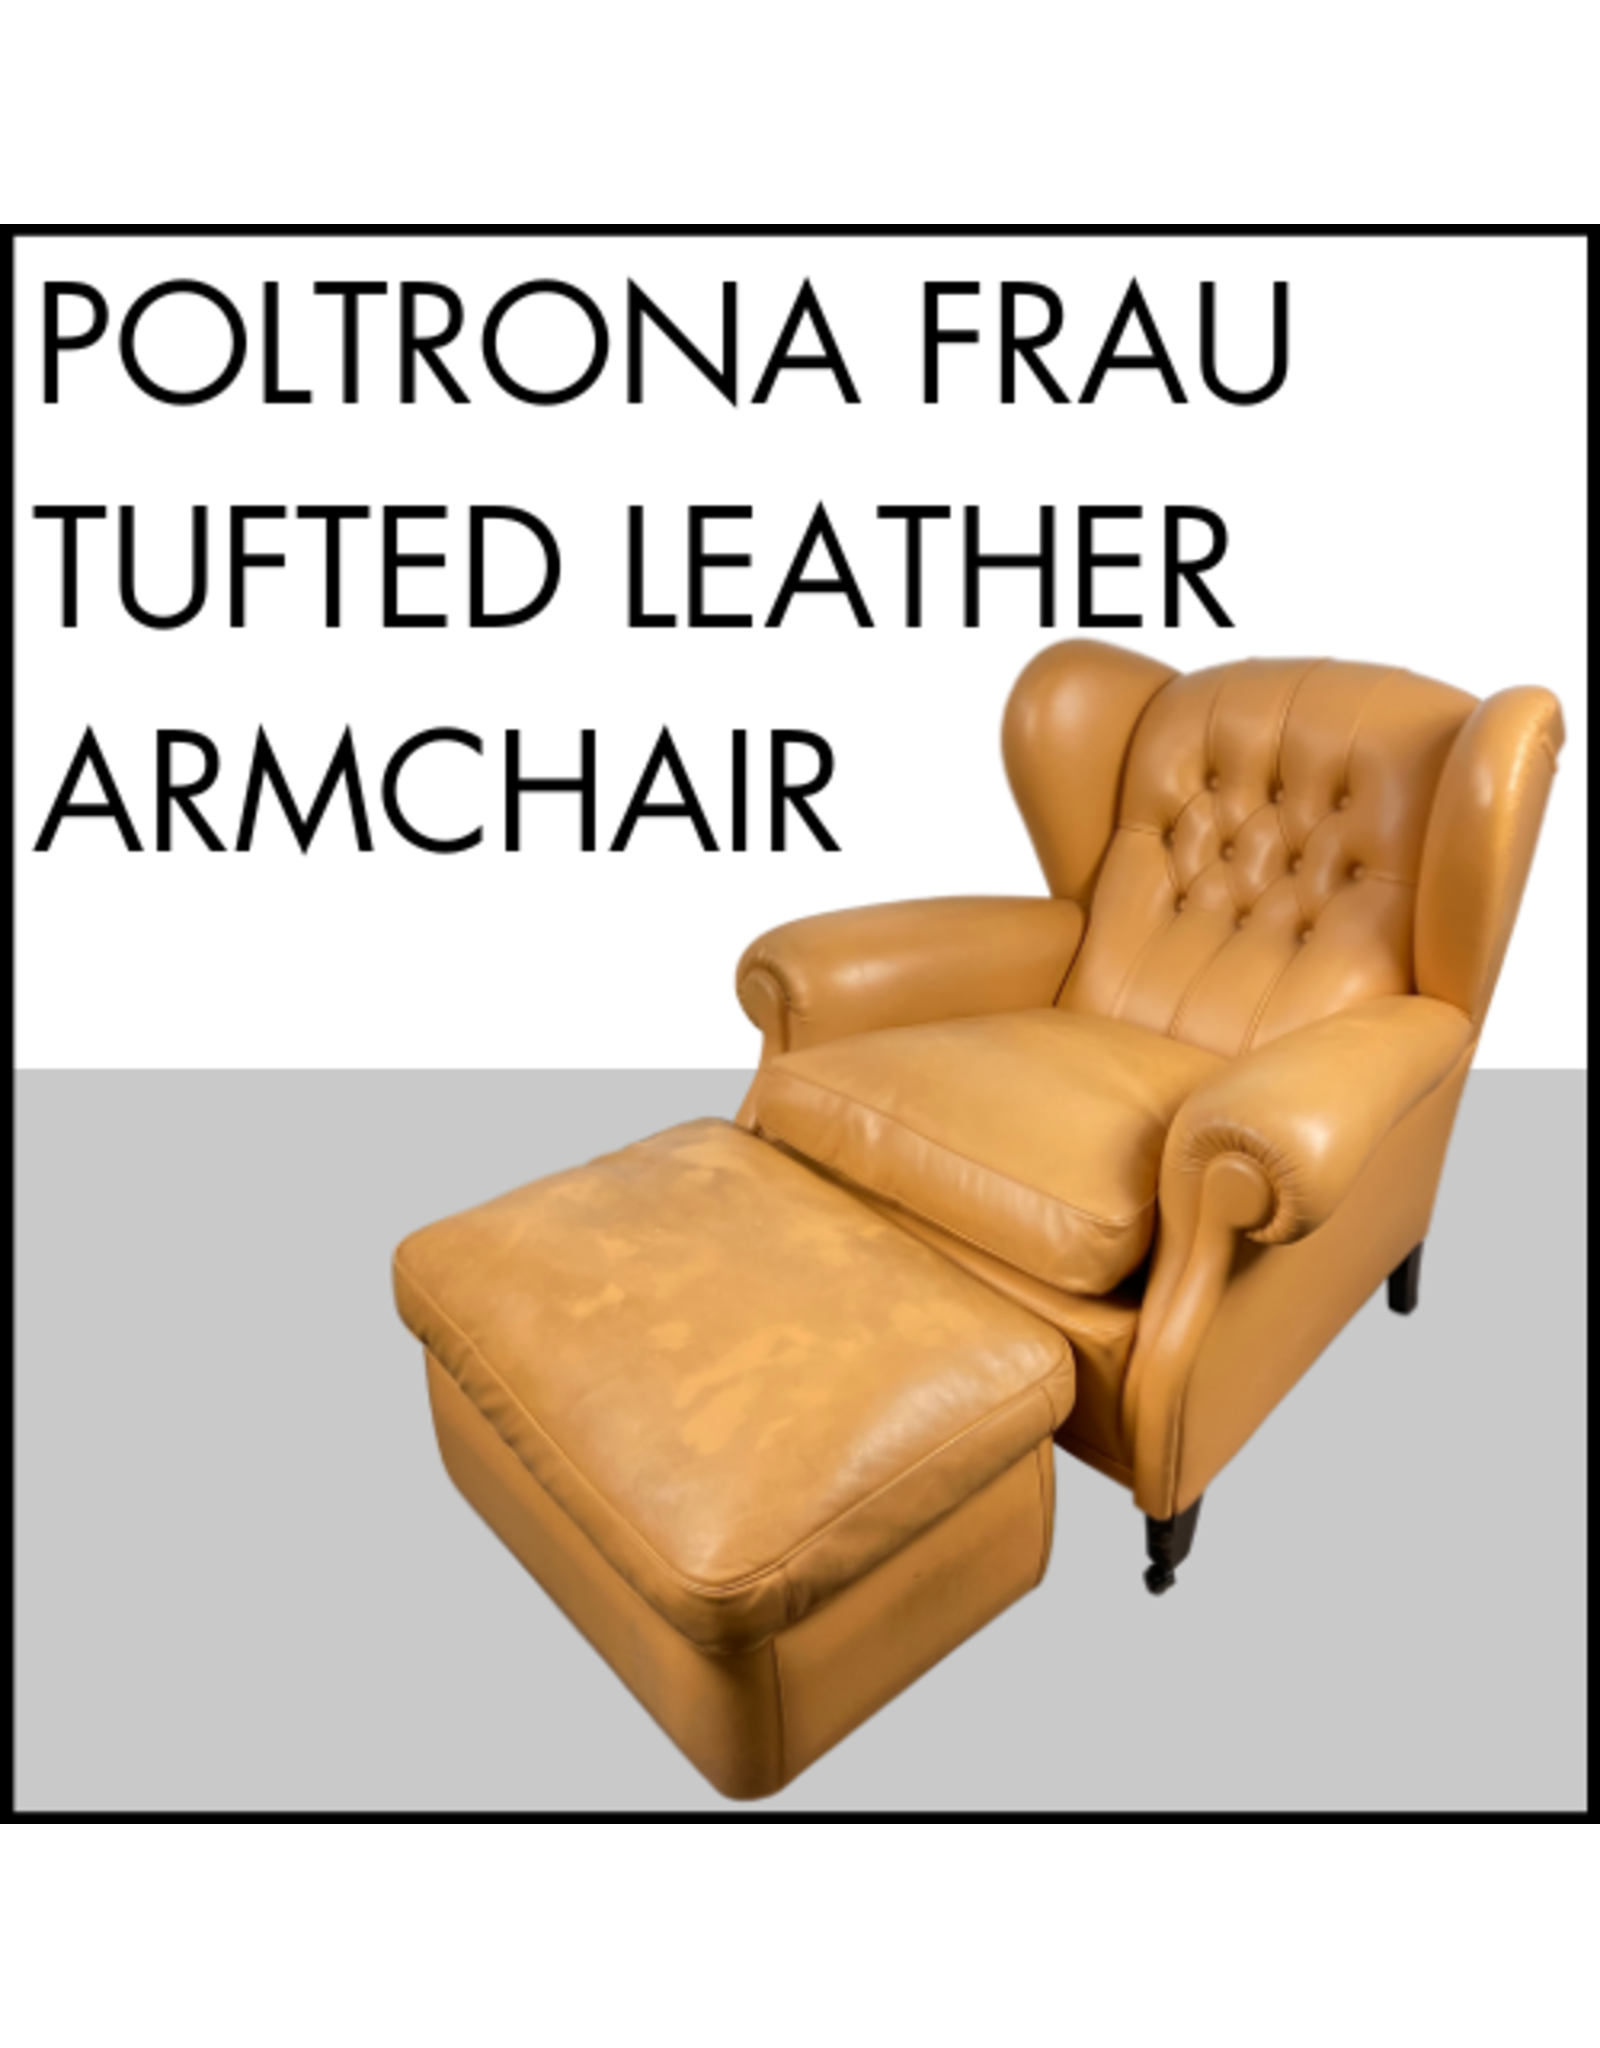 Poltrona Frau Tufted Leather Armchair